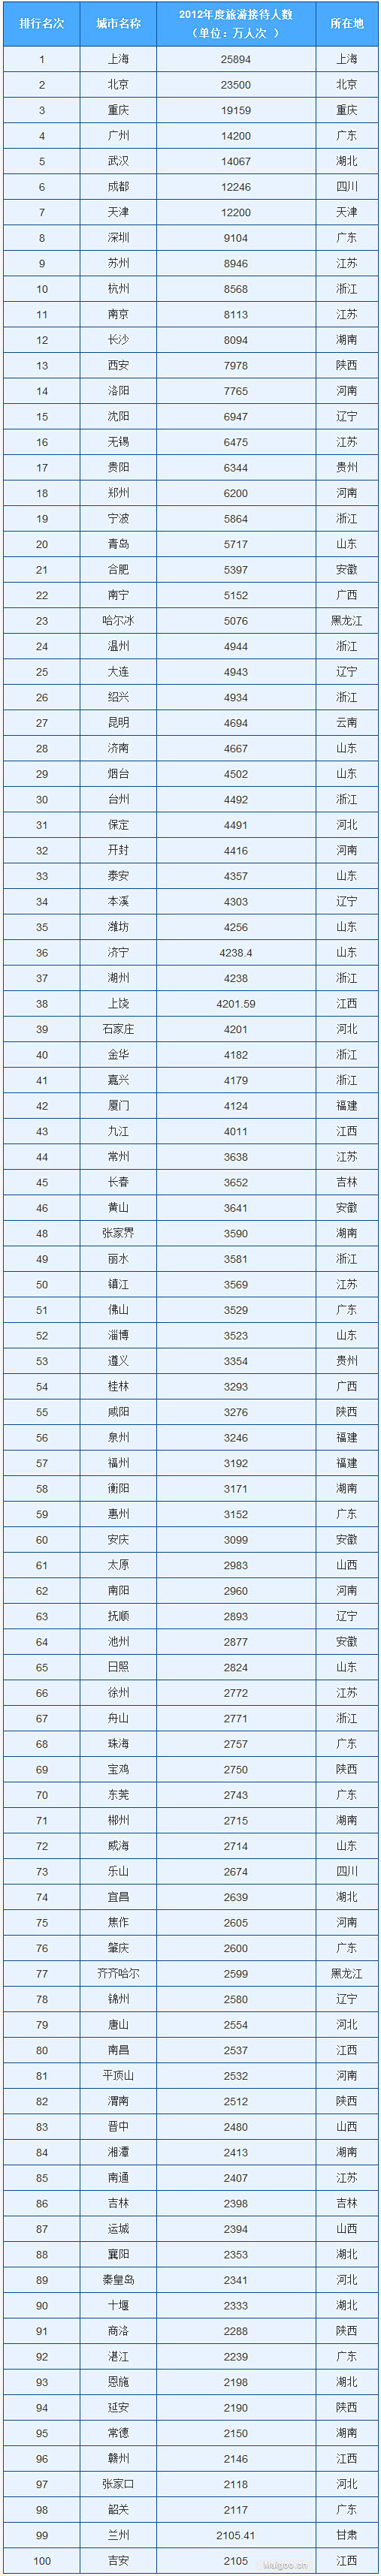 [旅游城市排名]中国百强旅游城市排行榜